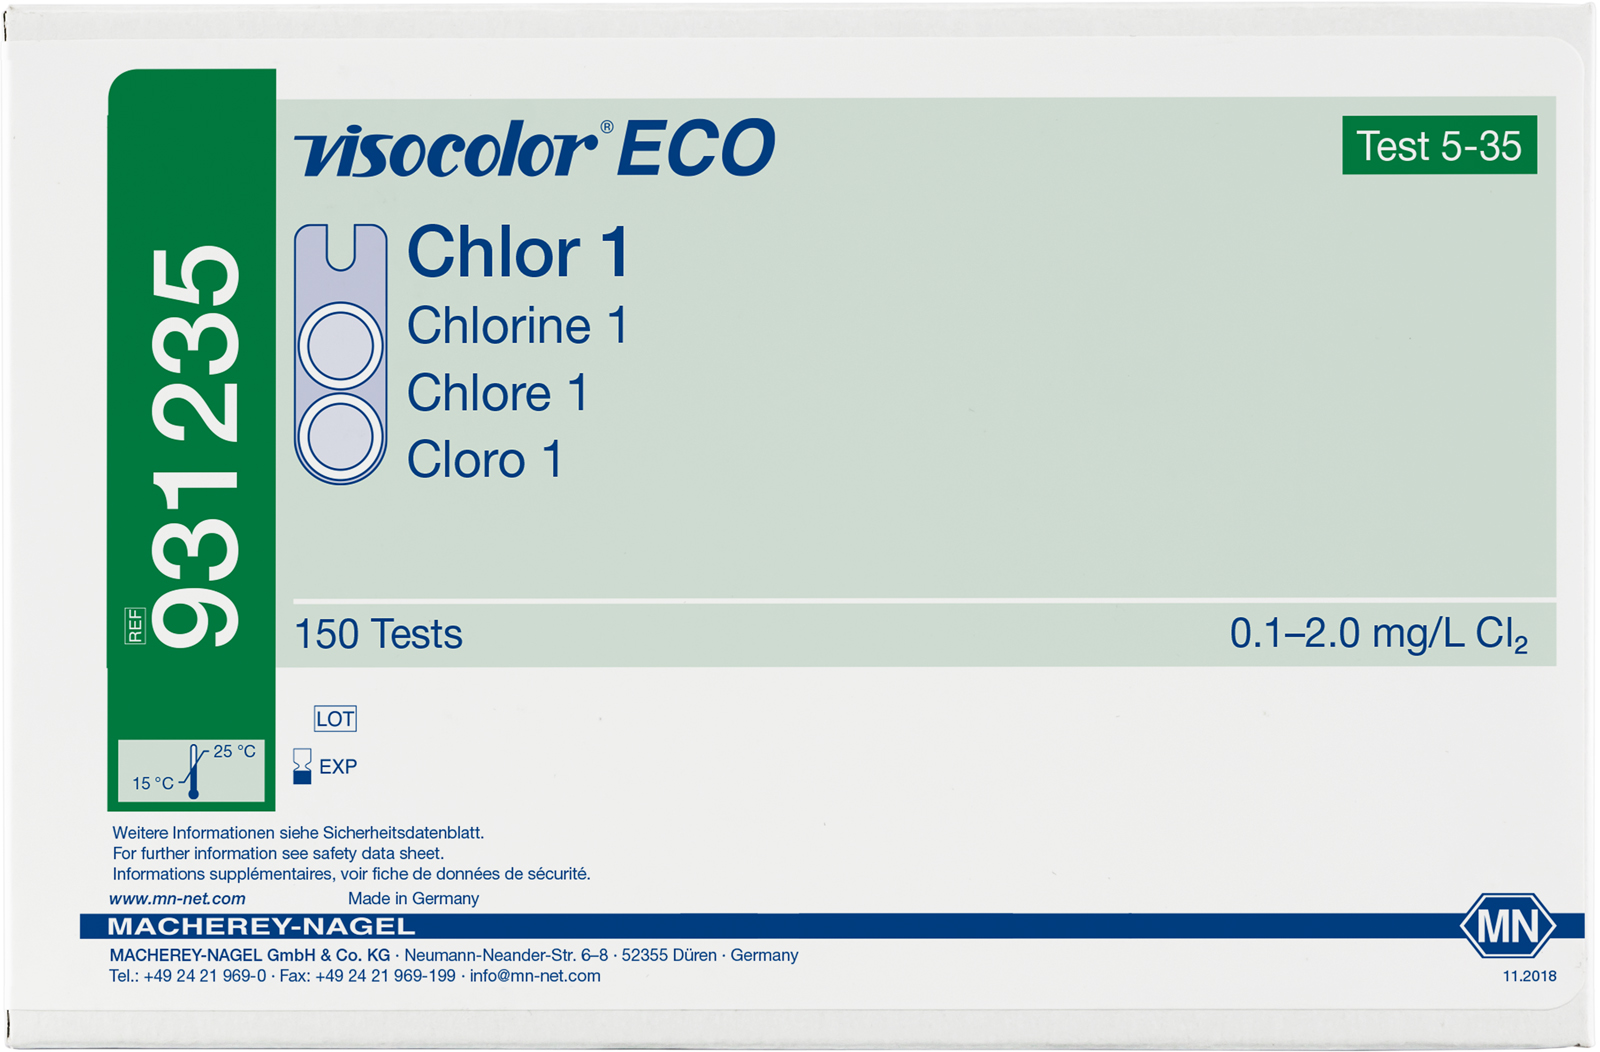 VISOCOLOR ECO Chlor 1, frei + gesamt